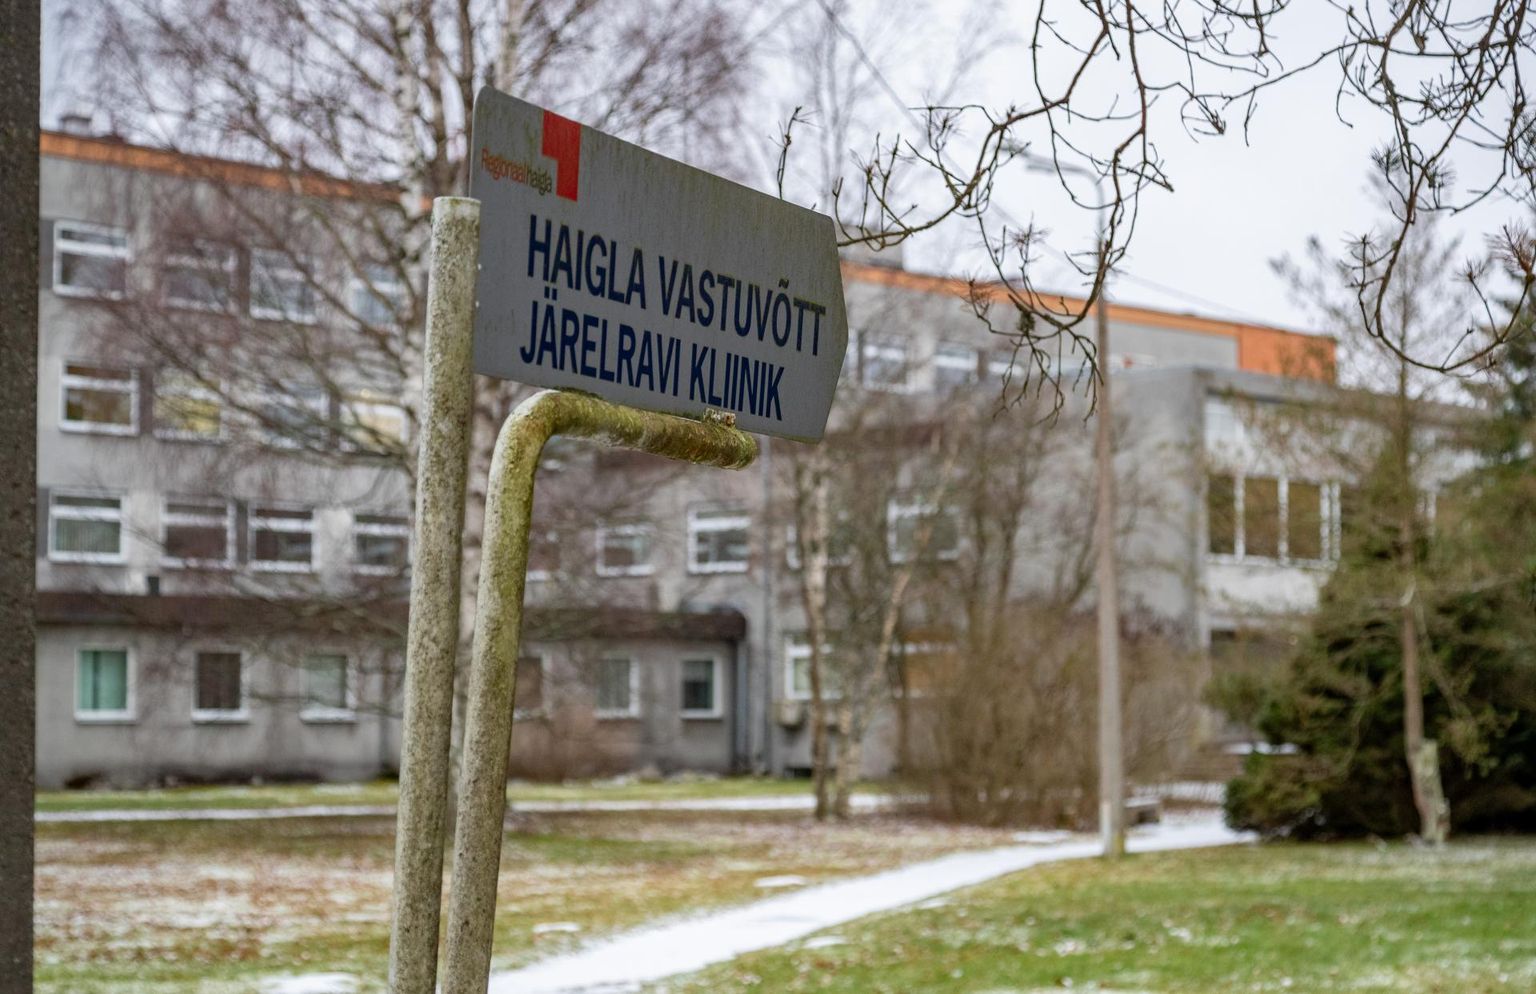 Põhja-Eesti regionaalhaigla Hiiul asuvas järelravi kliinikus töötab kodulehe andmetel üheksa arsti, 64 õde ja 68 hooldajat.